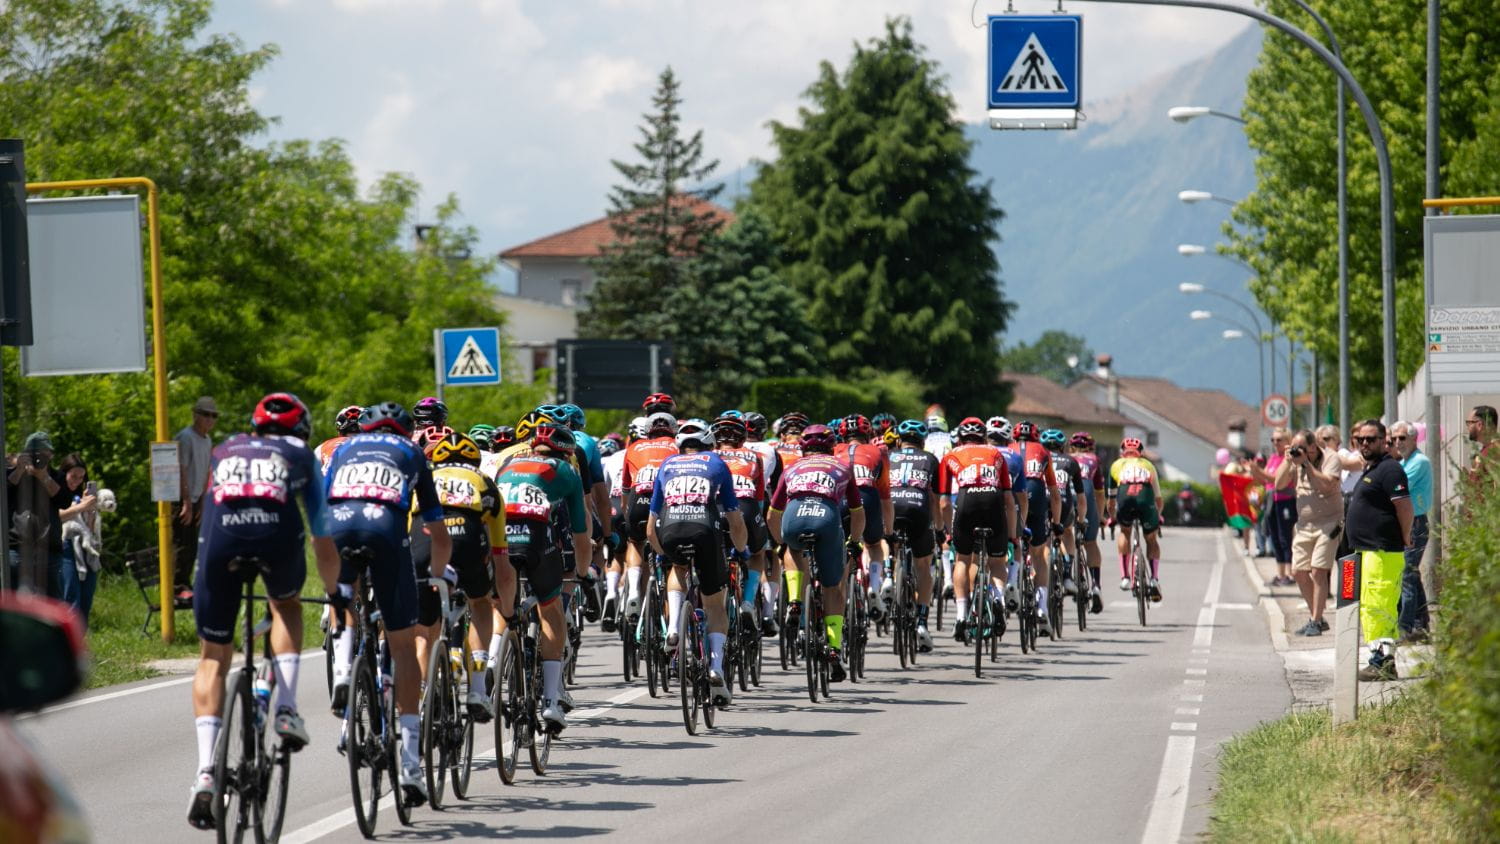 Giro-d-Italia-7-days-Bike-Tour-Gruppetto